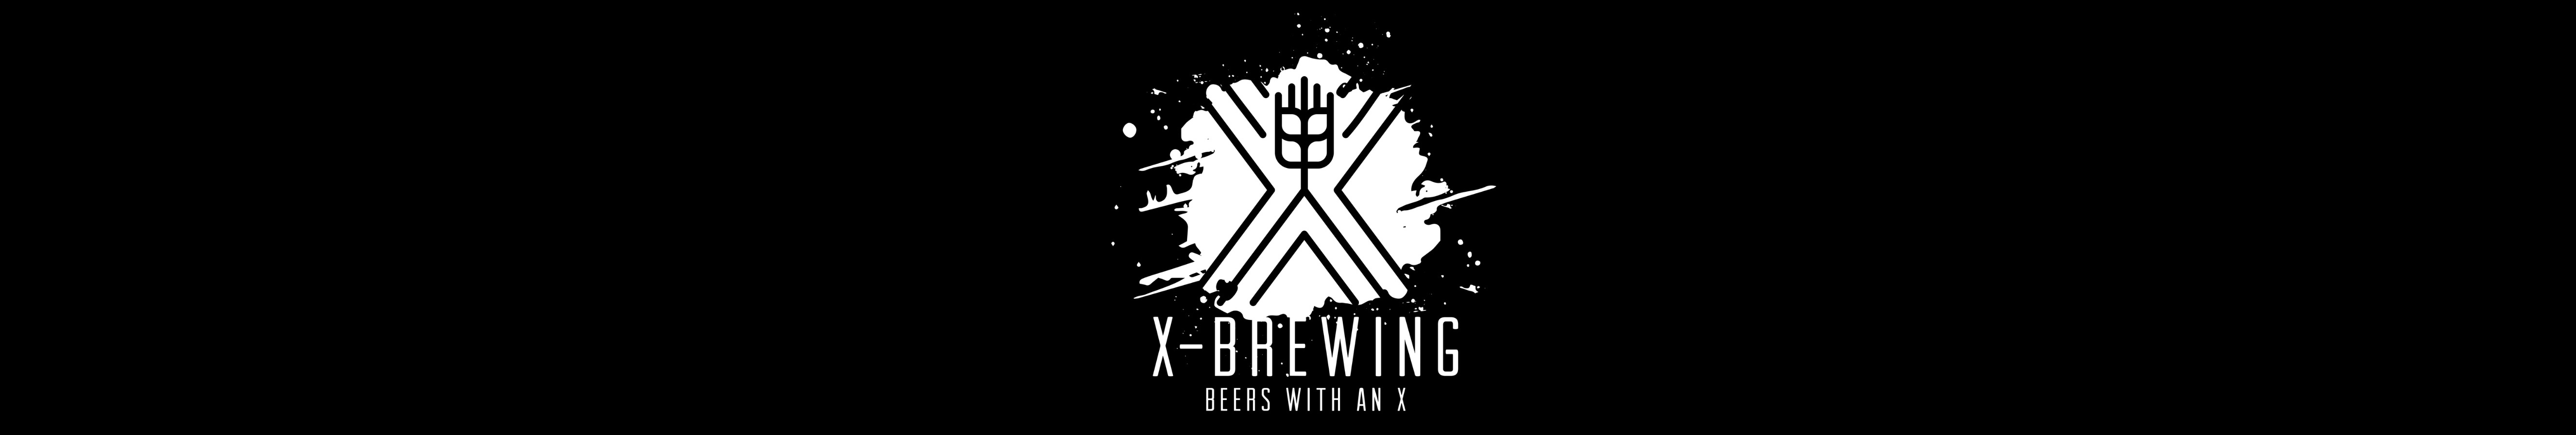 X-Brewing